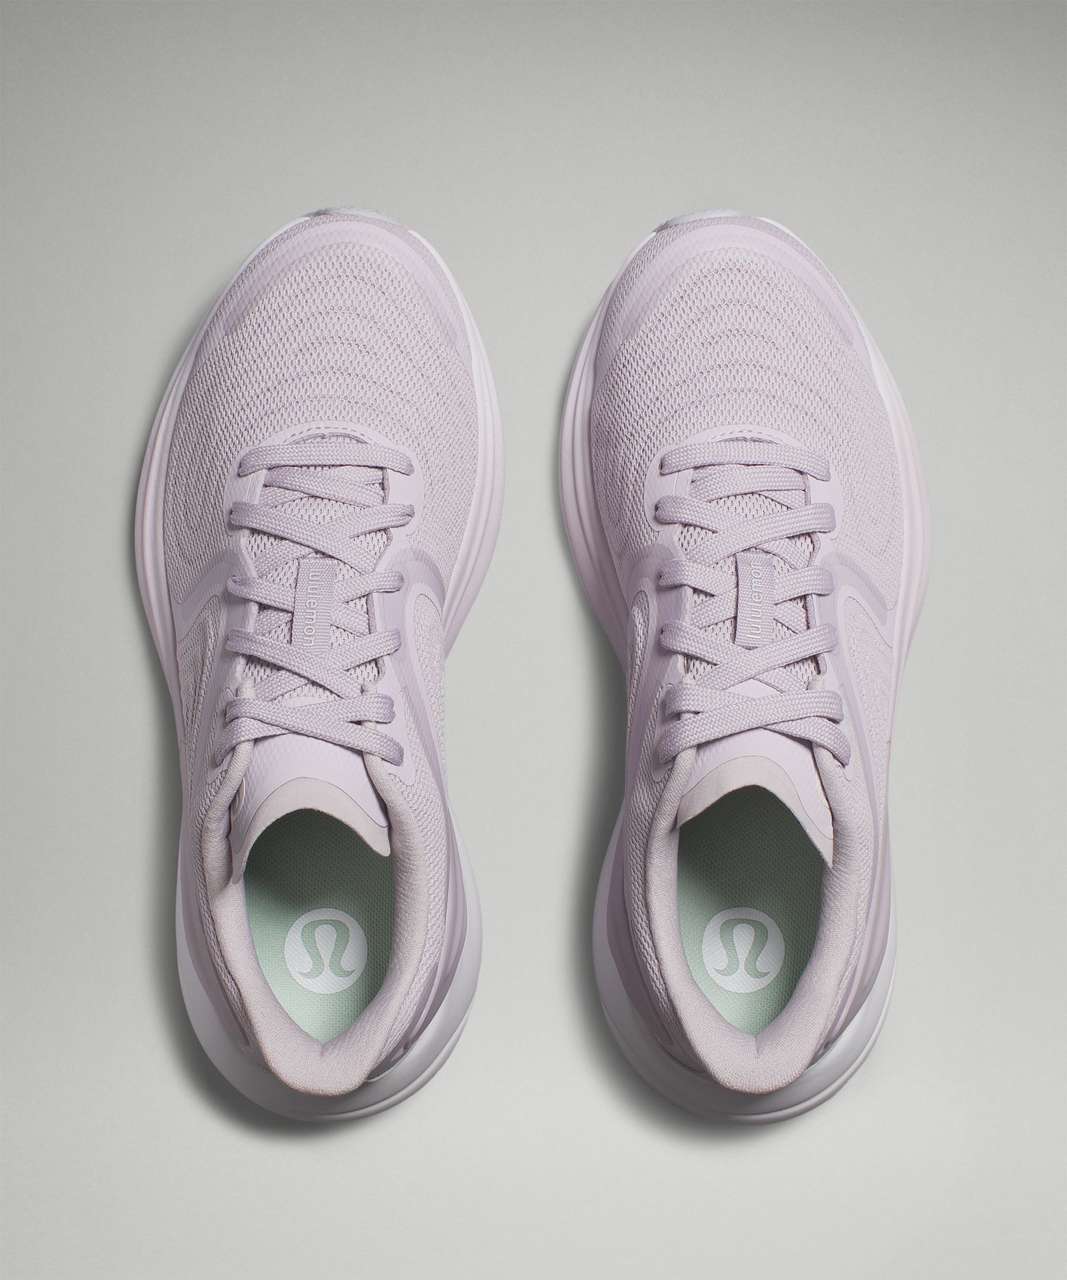 Lululemon Blissfeel 2 Womens Running Shoe - Faint Lavender / White / Starlight